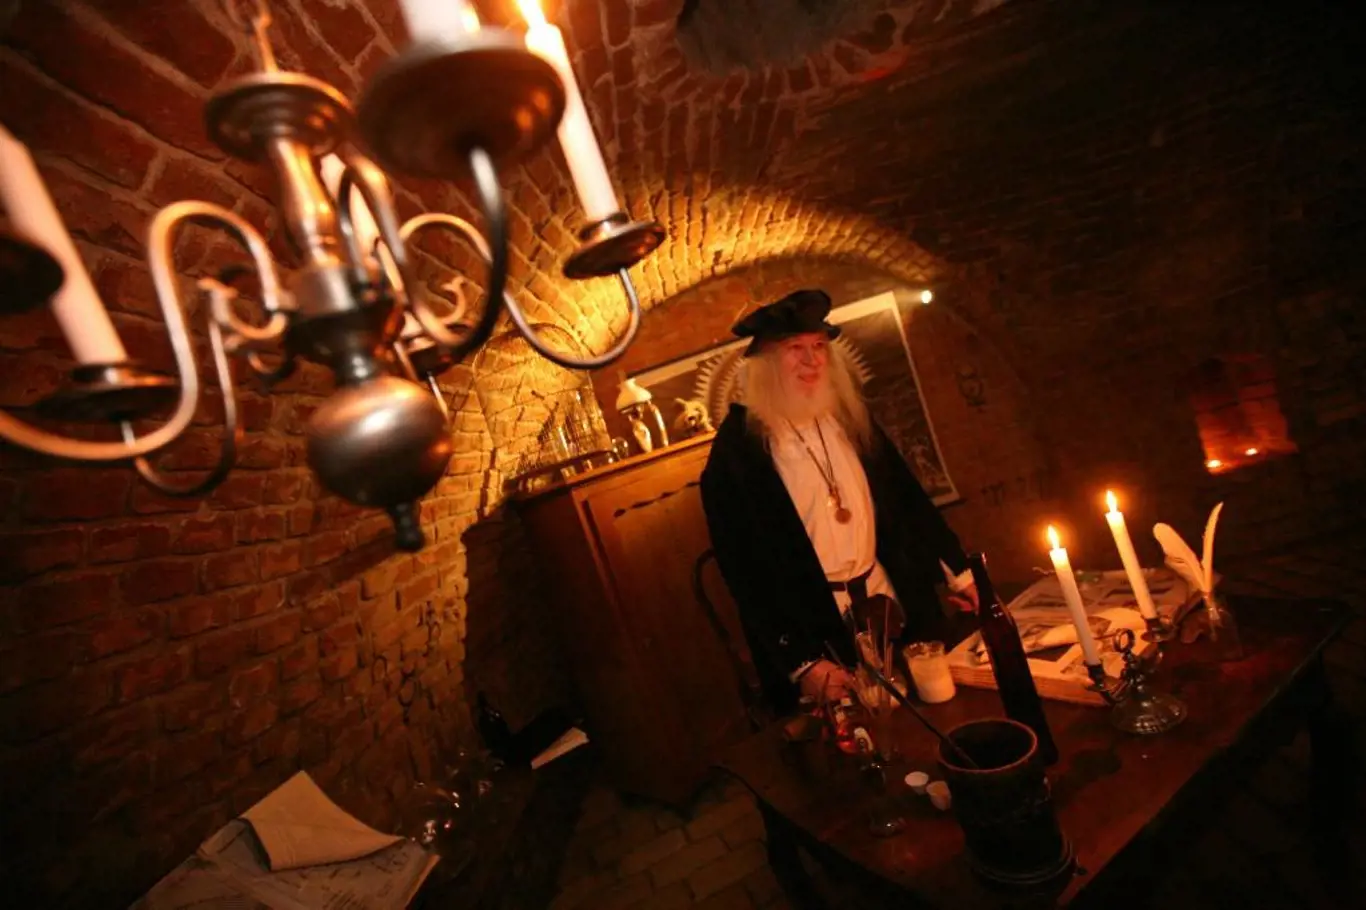 <p>Atmosféru dávných staletí dokreslují zapálené svíčky a historické předměty</p>
